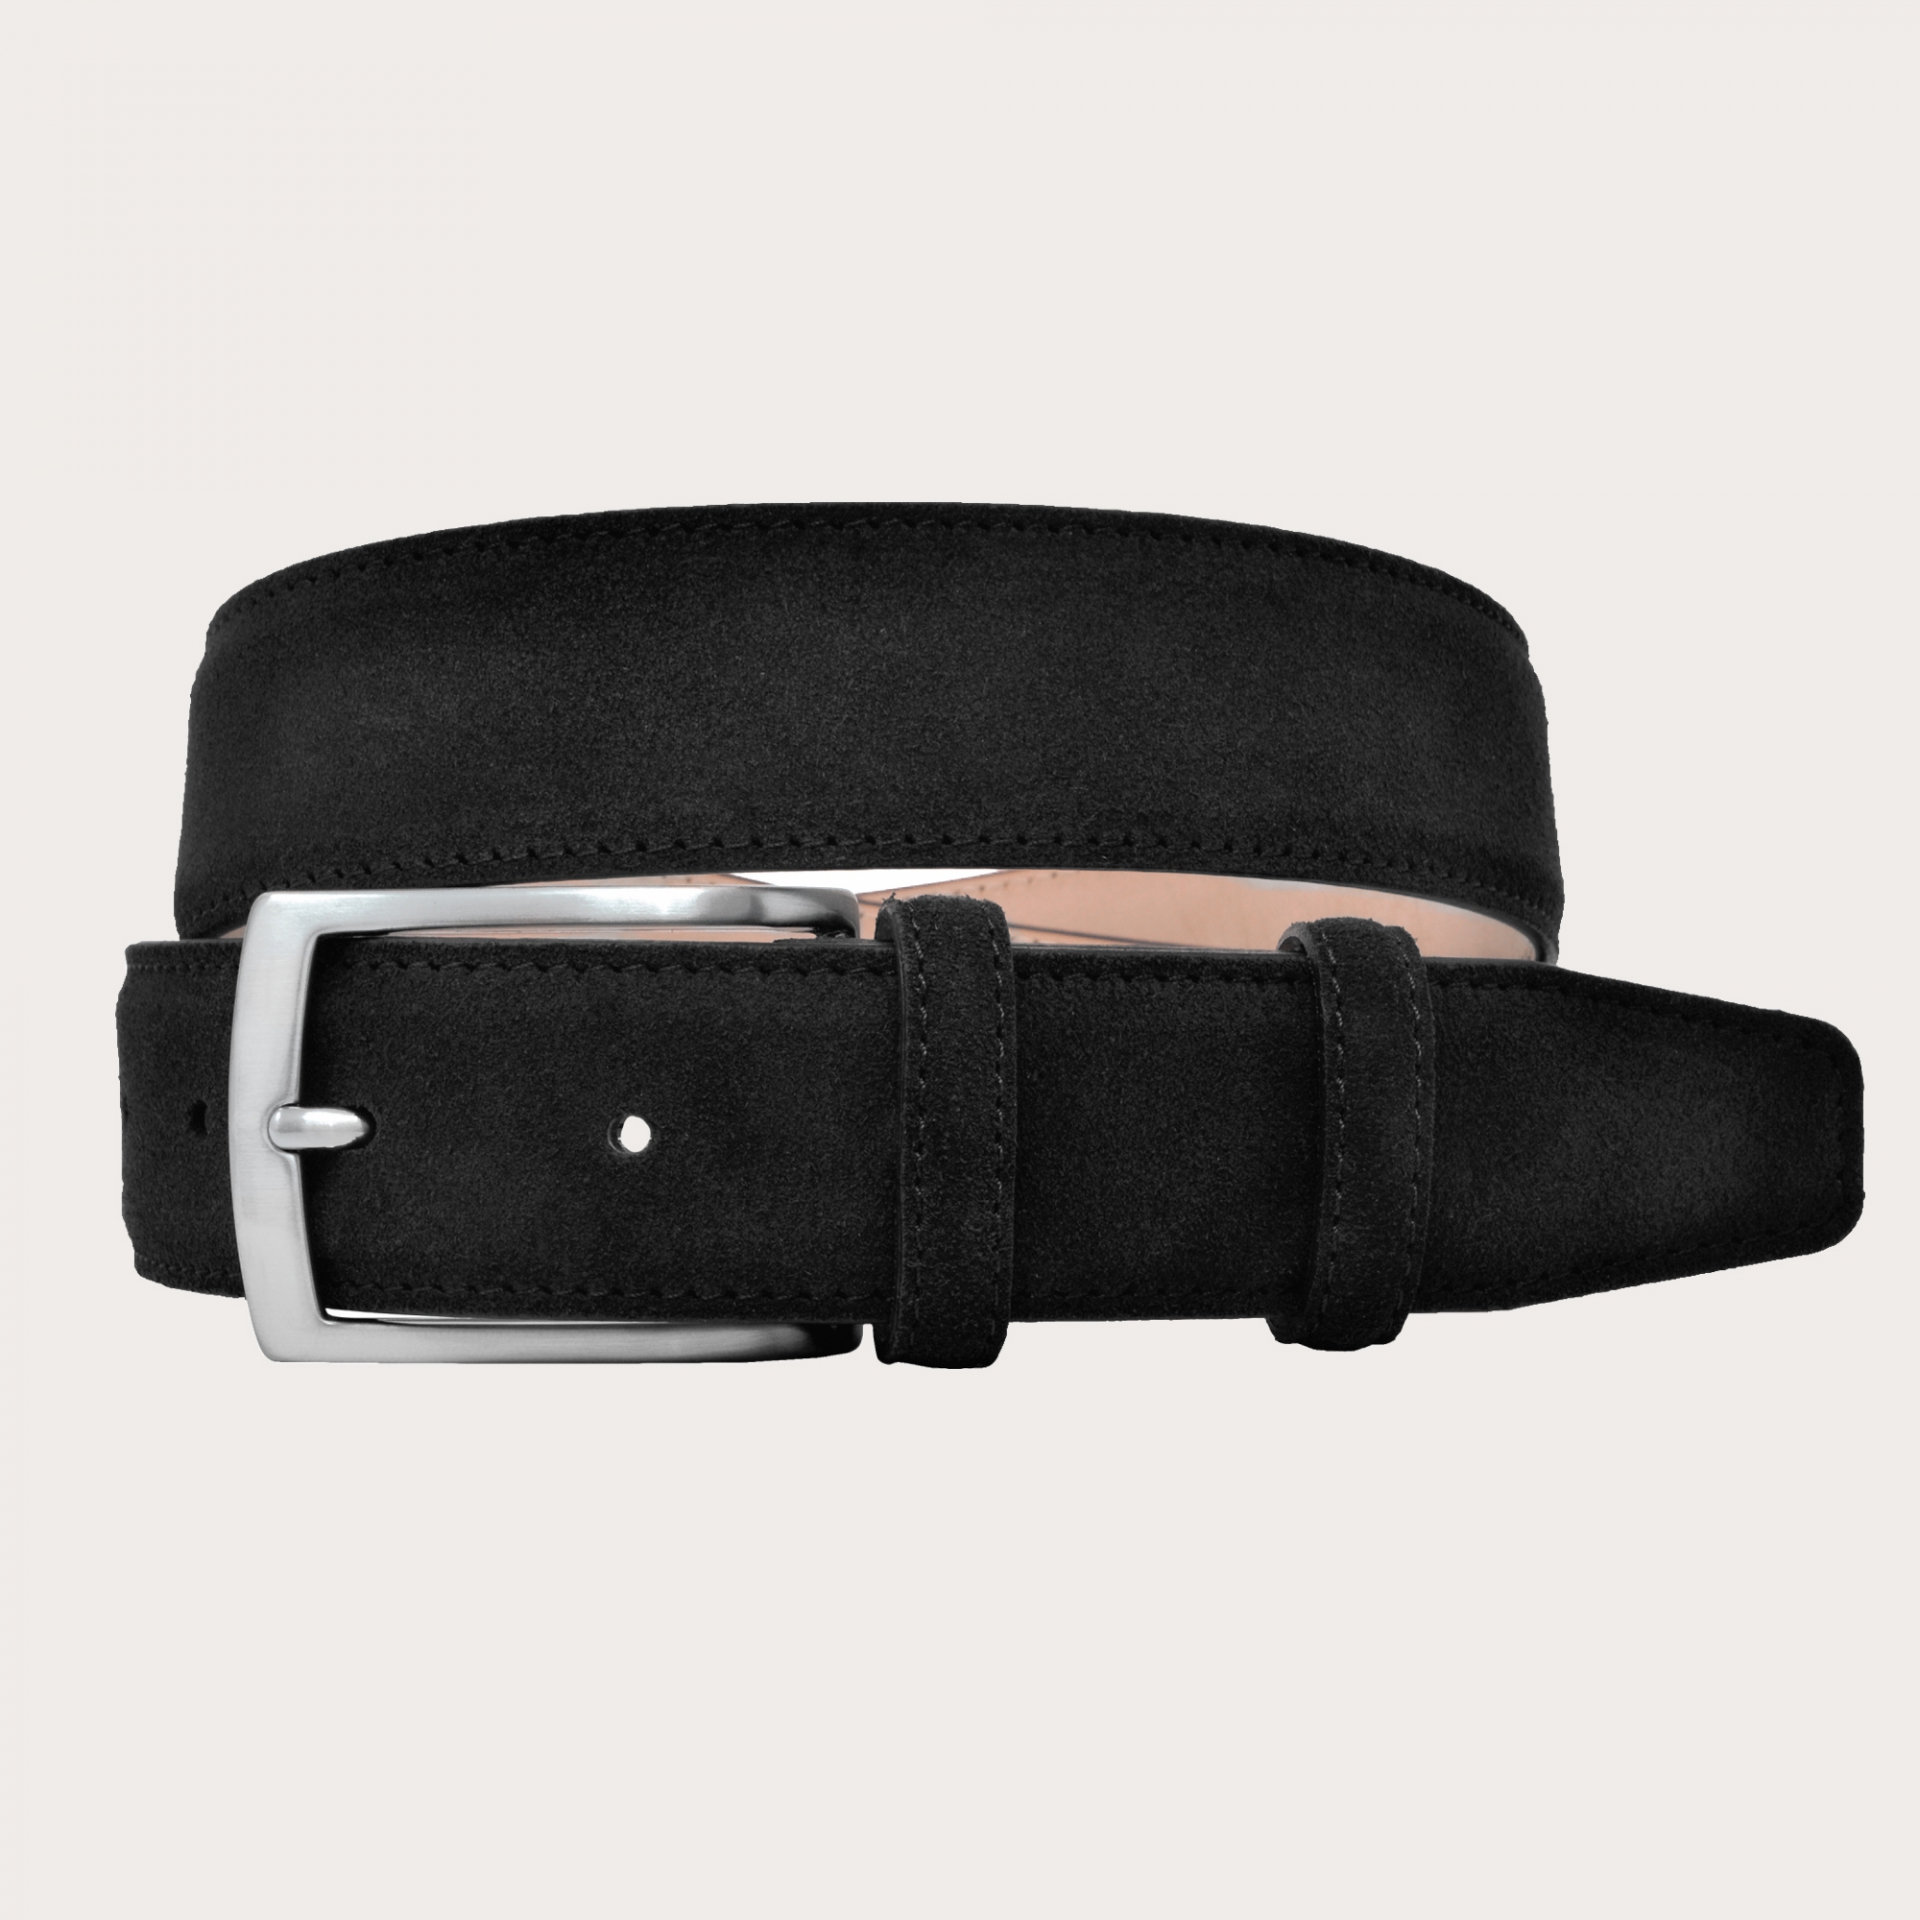 black belt suede leather for men